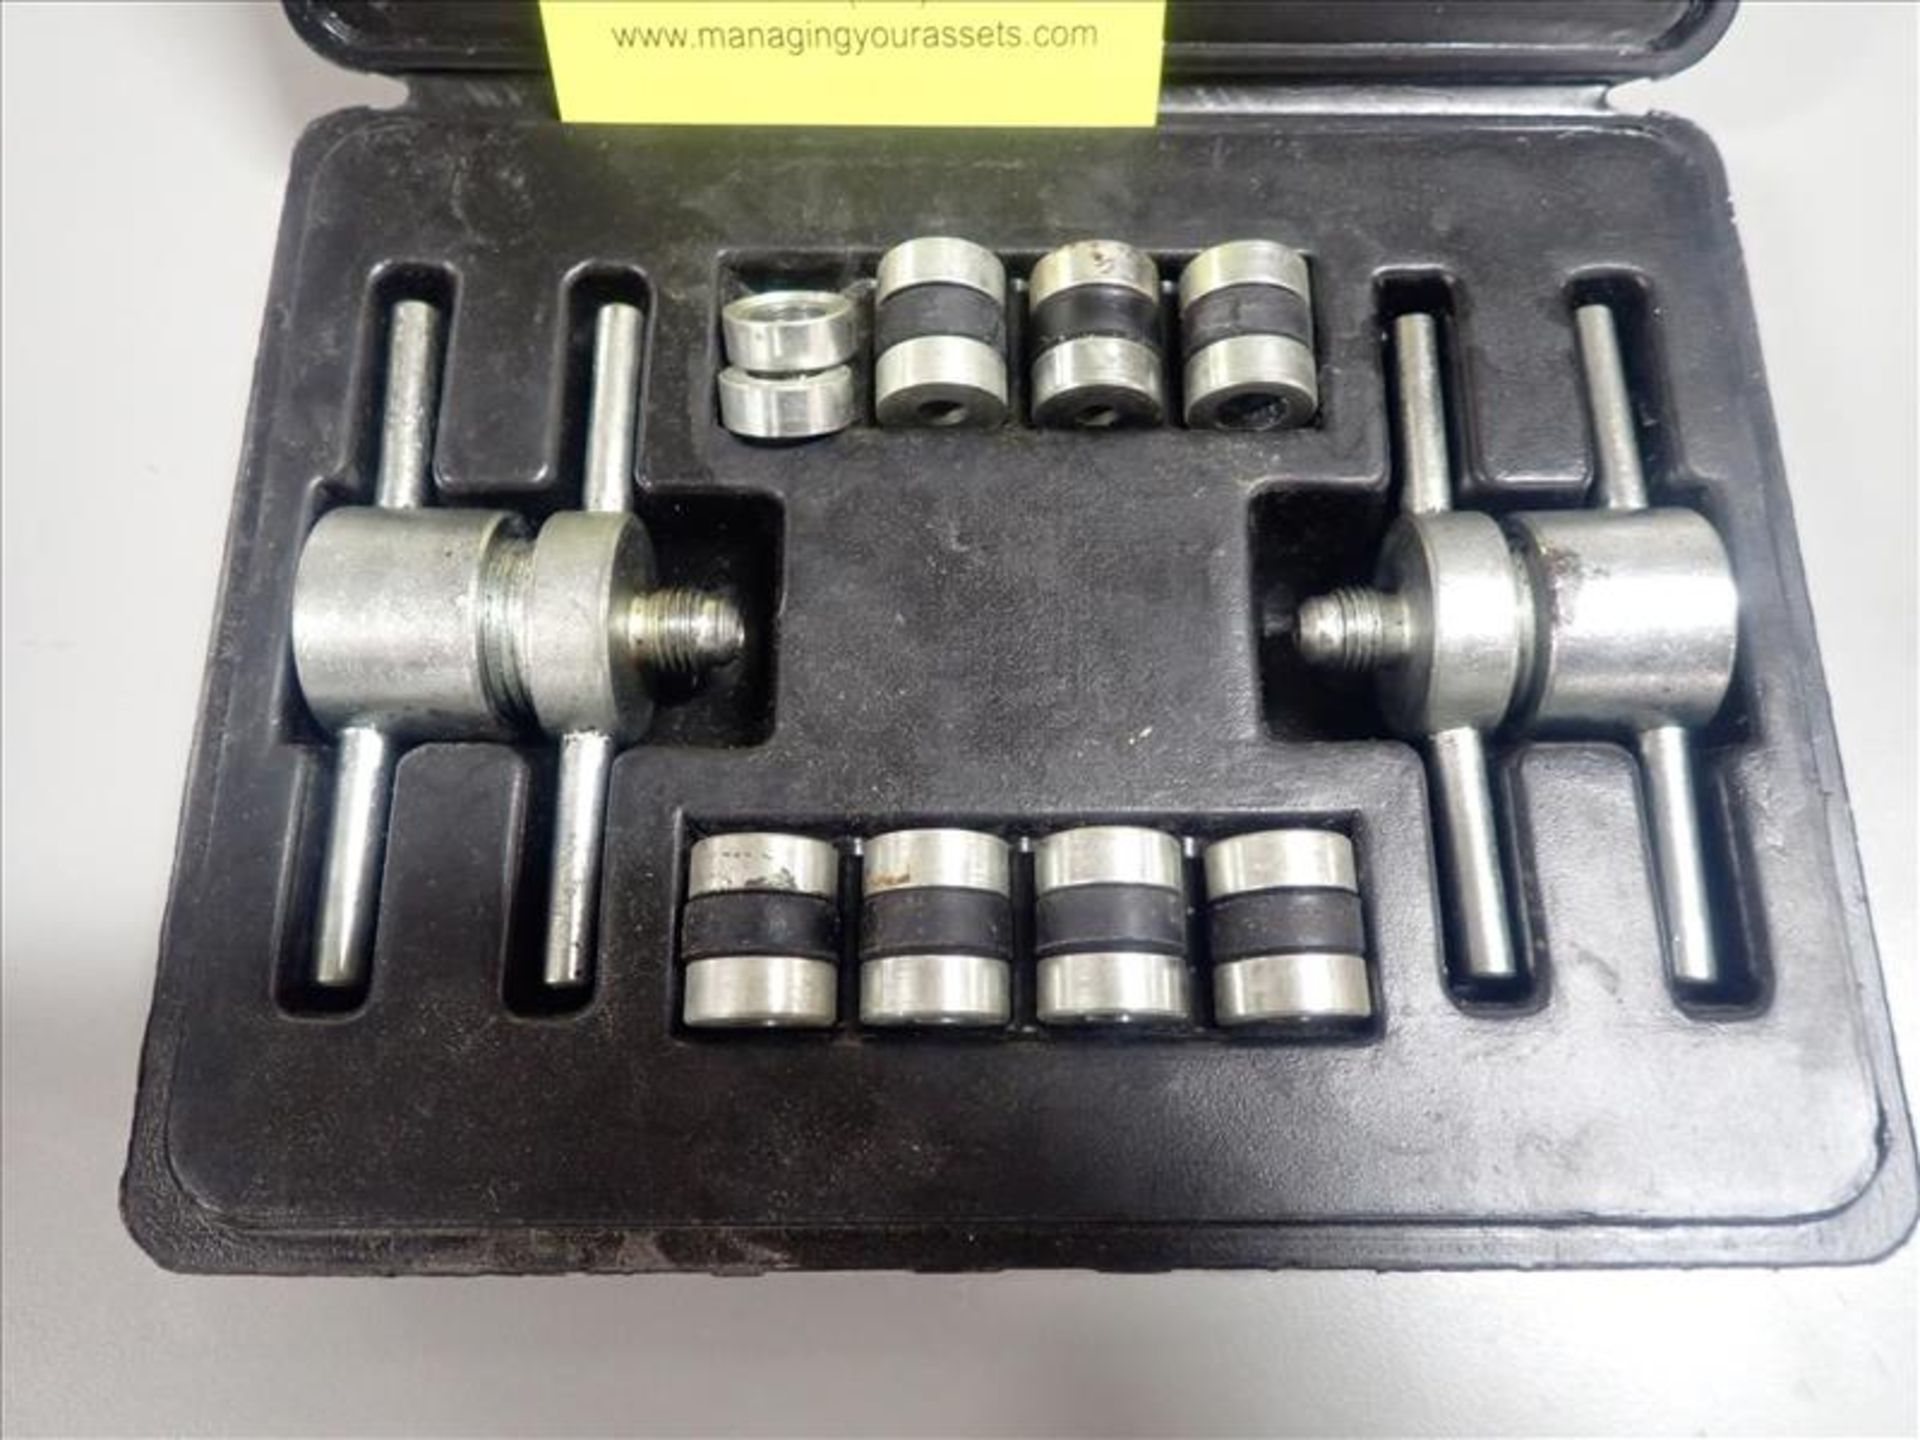 Robinar process tube adapter kit, P/N 12458 - Image 2 of 2